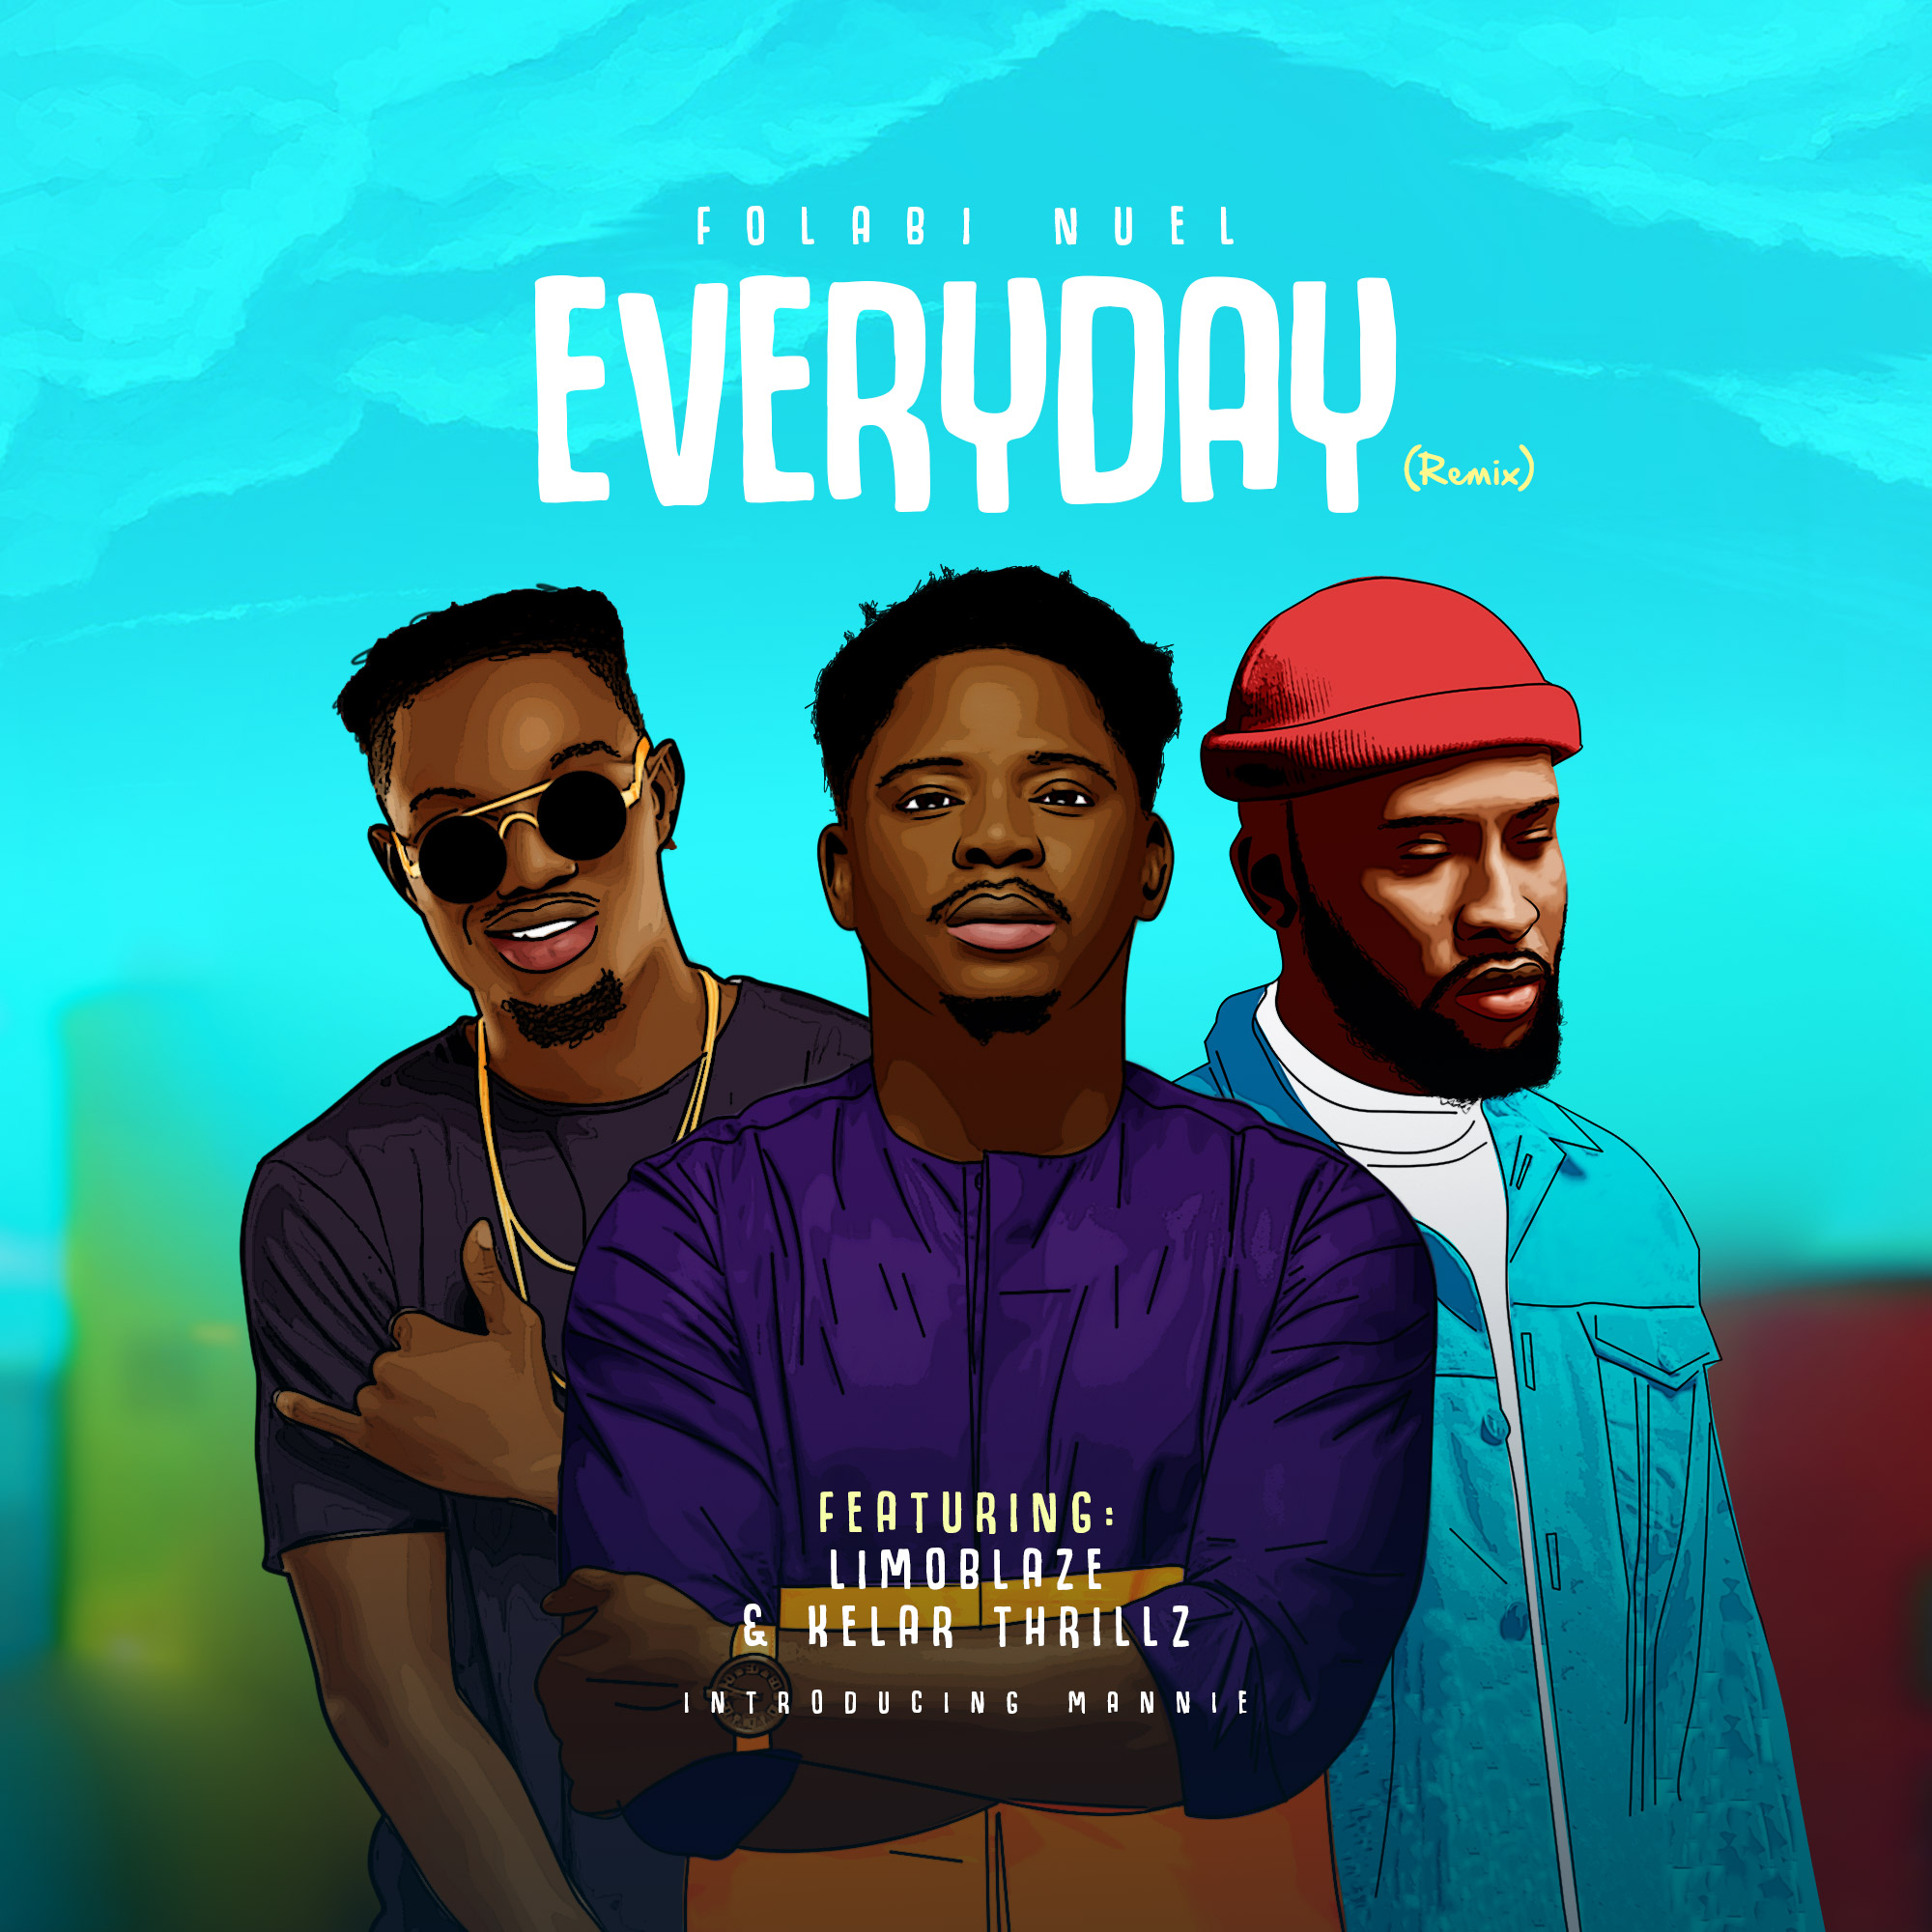 Everyday (Remix) - Folabi Nuel Ft. Limoblaze & Kelar Thrillz